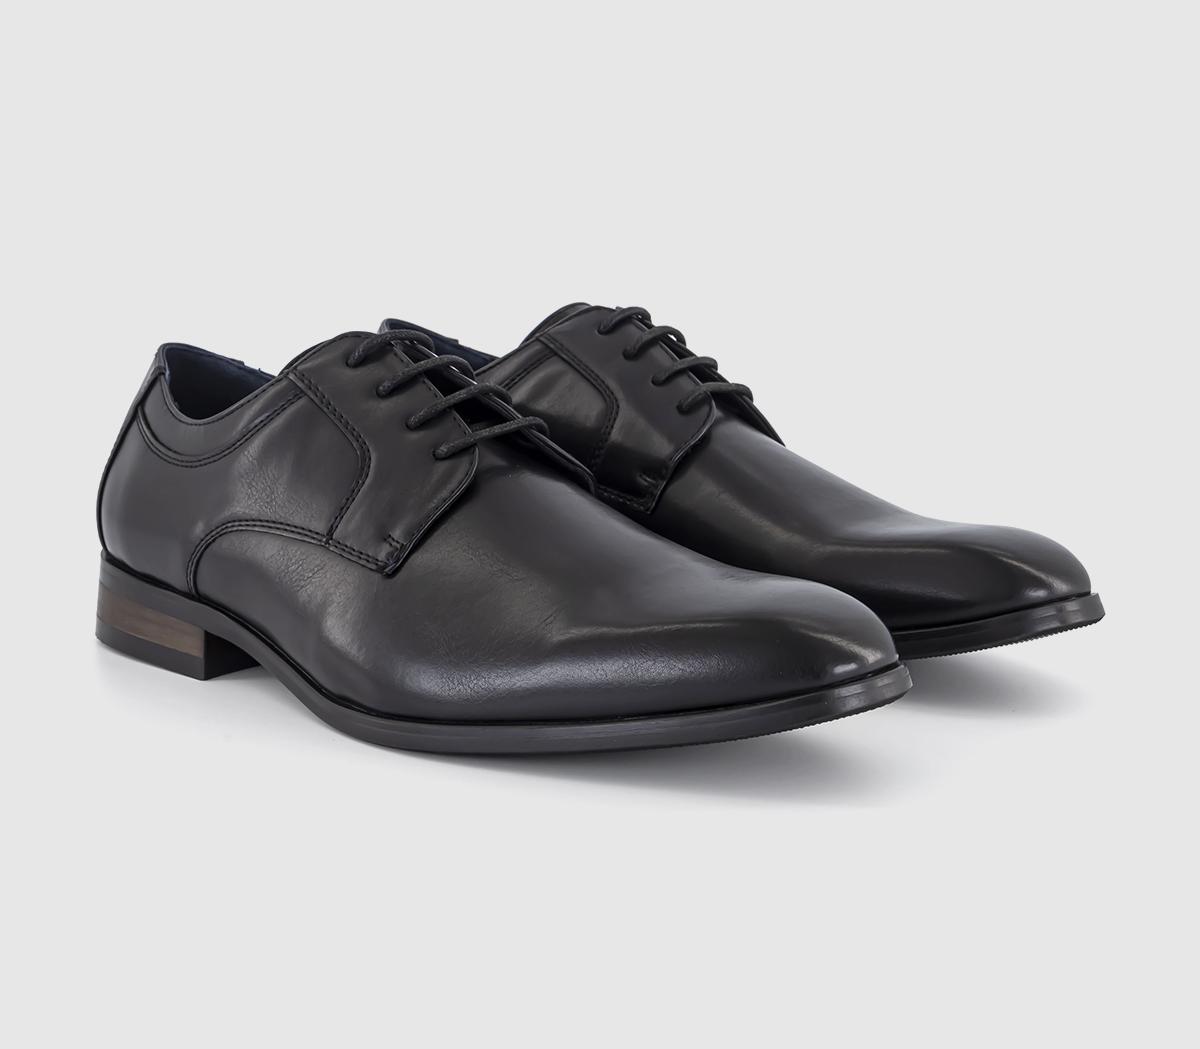 OFFICE Mens Modena Plain Toe Derby Shoes Black, 12